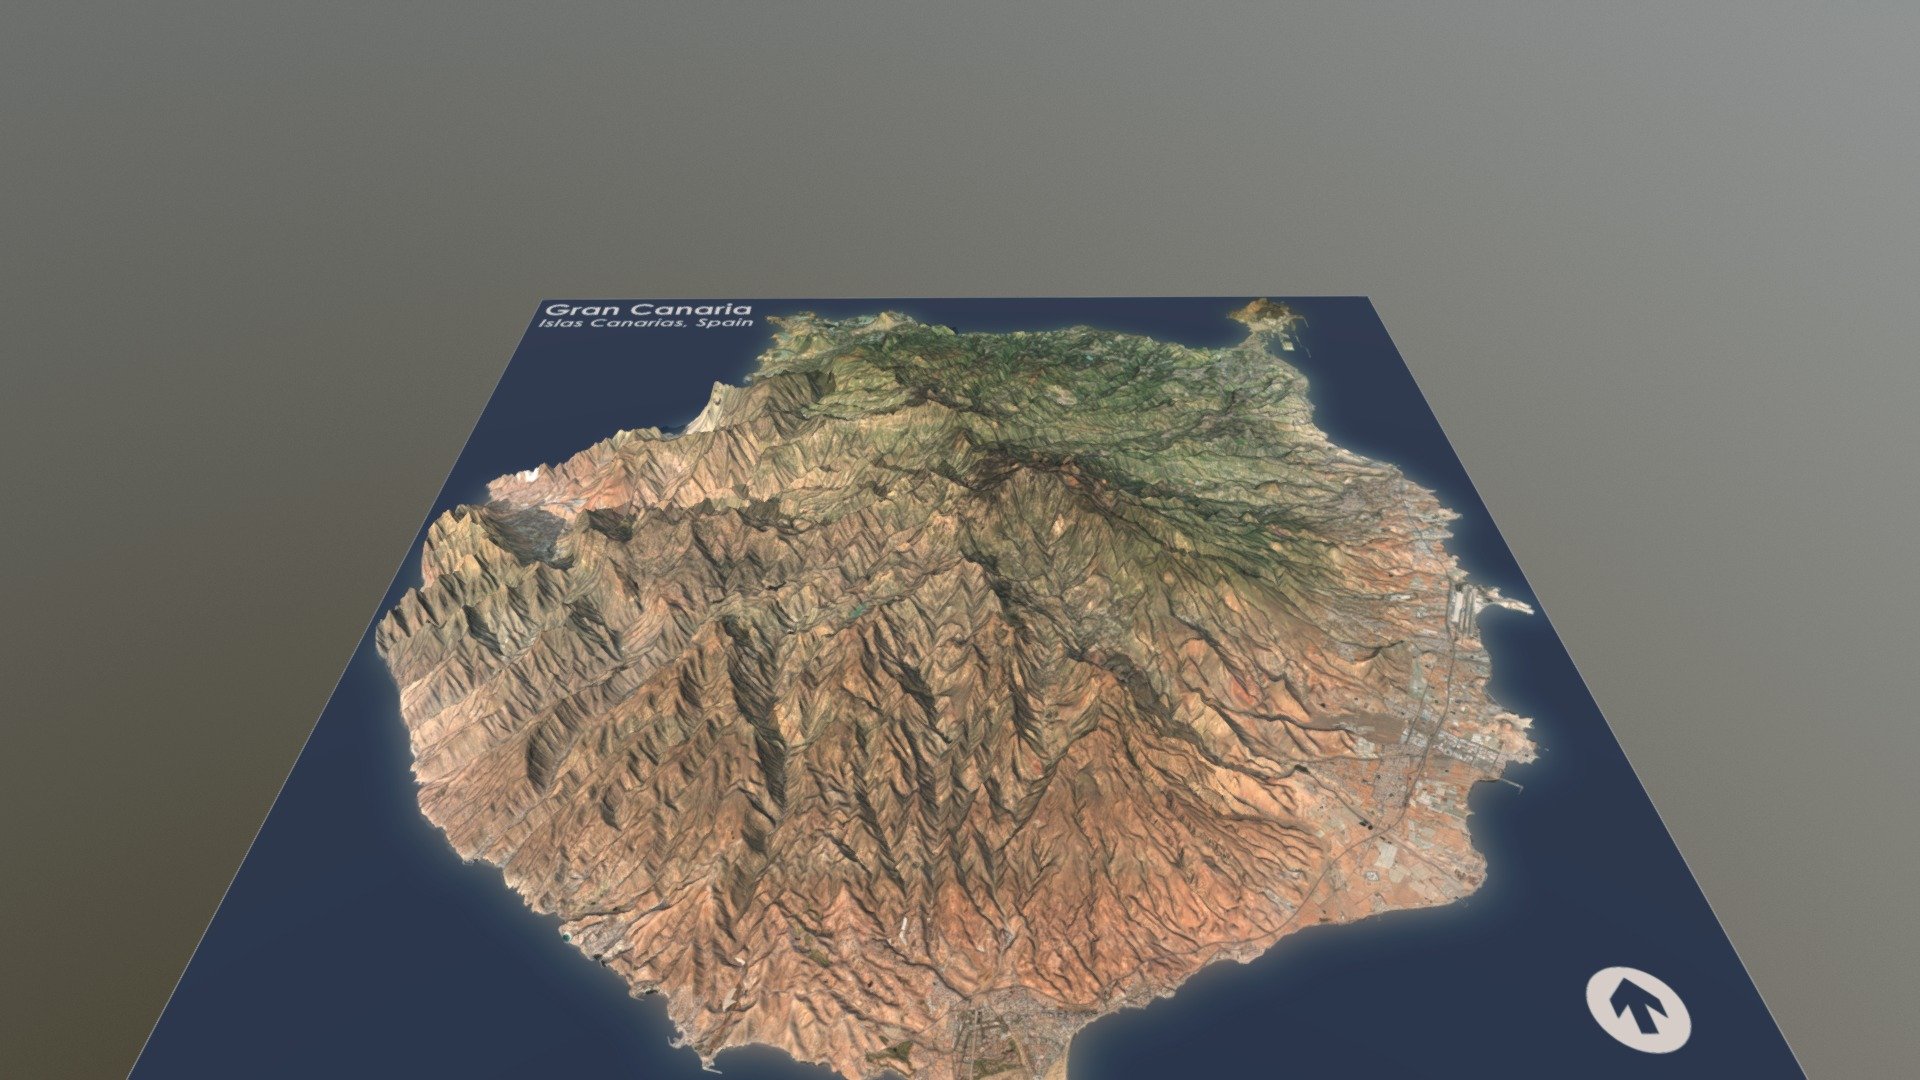 Gran Canaria, Canary Islands (1:200,000 Scale)